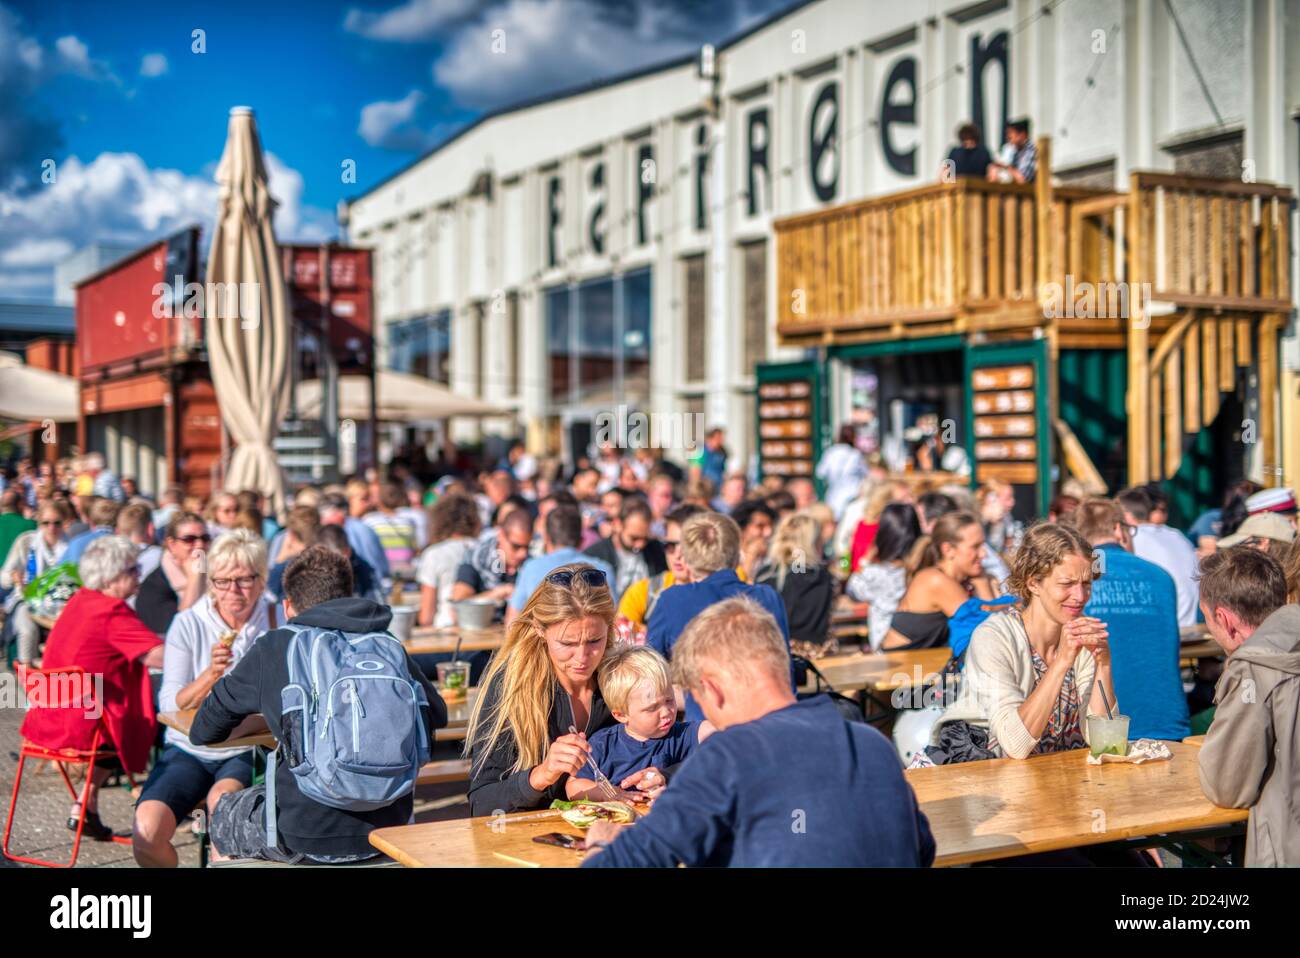 People socialising at Papiroen in Copenhagen Stock Photo